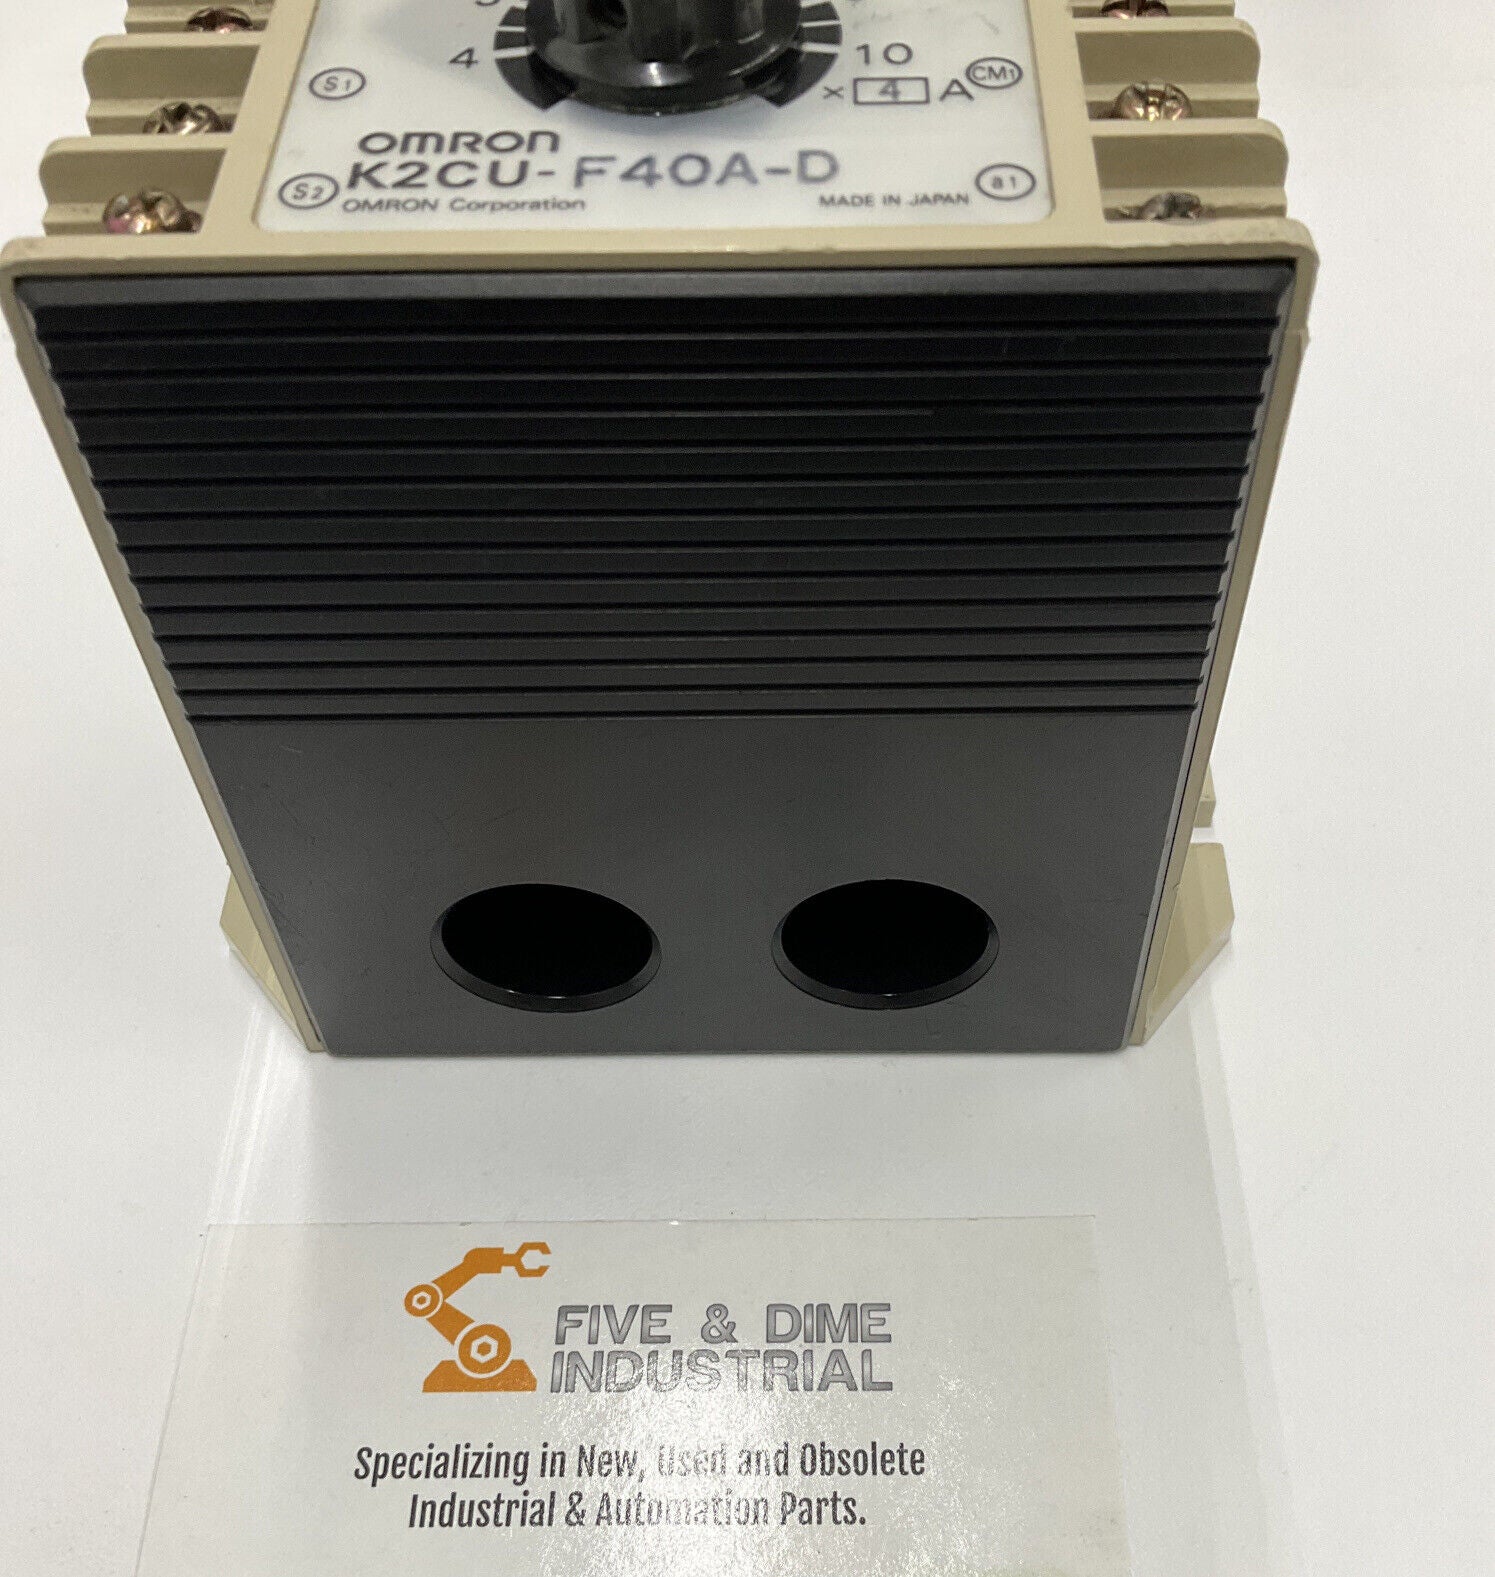 OMRON K2CU-F40A-D Heater Fault Detector (BL230) - 0